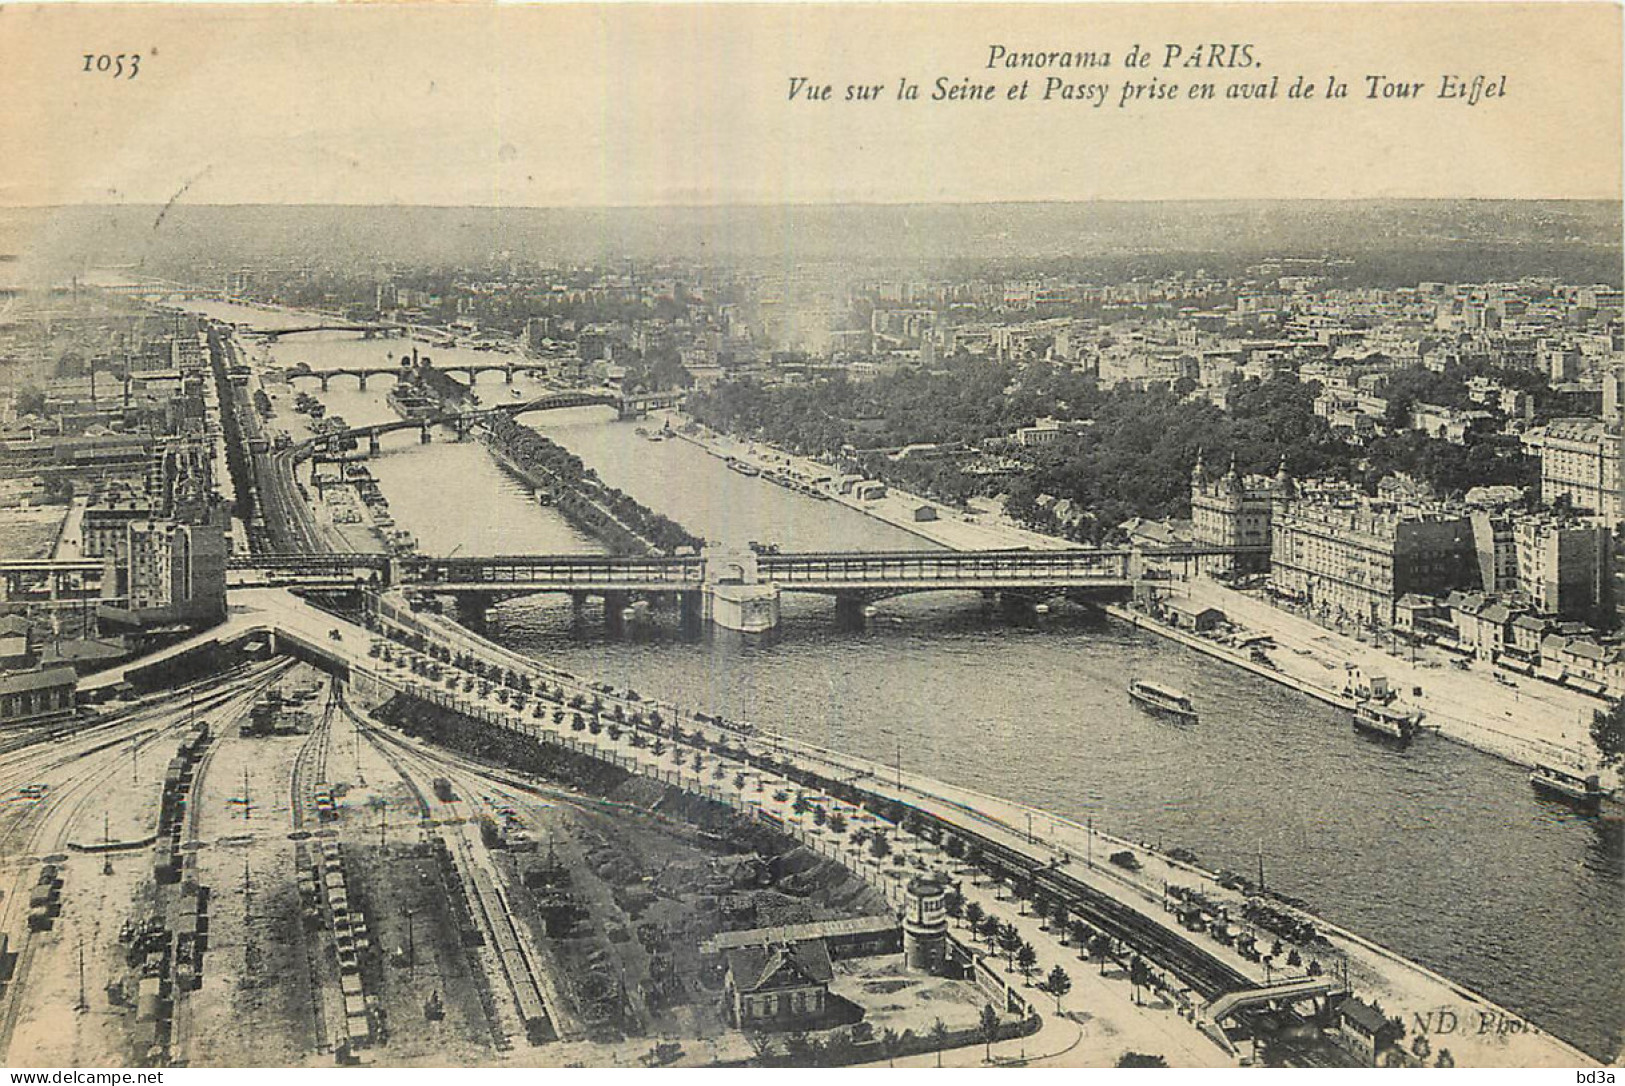 75 - PARIS - VUE DE LA TOUR EIFFEL - Panoramic Views